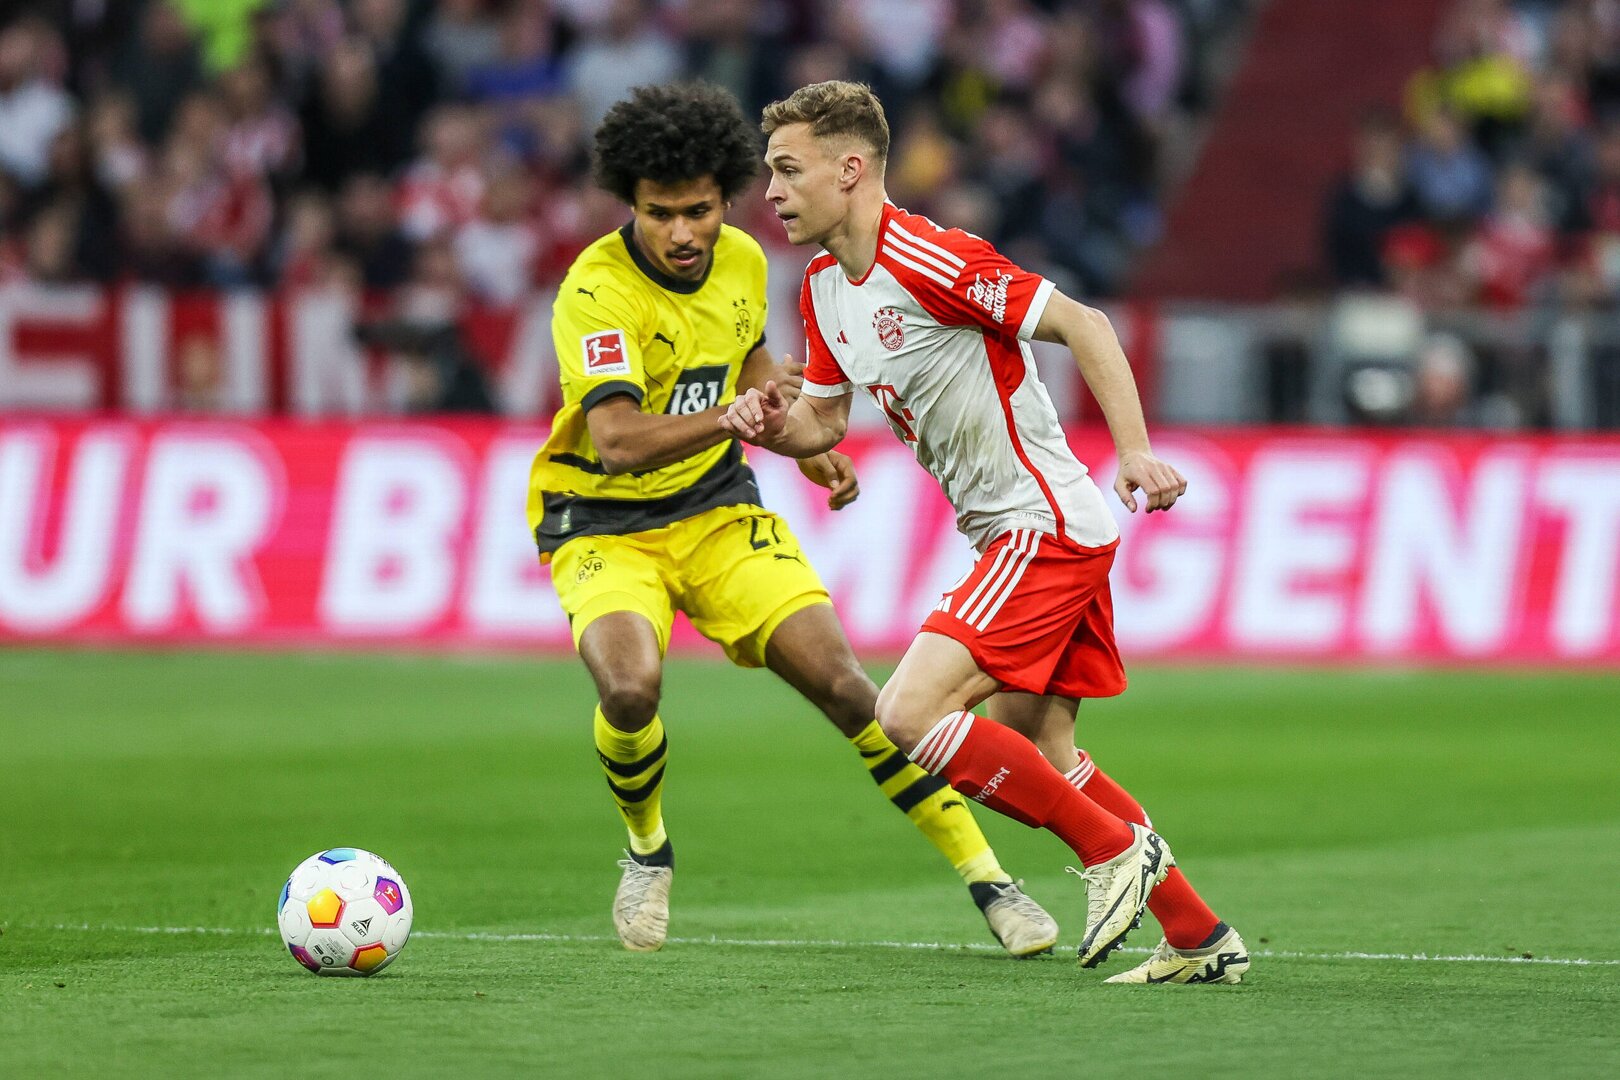 Borussia Dortmund upset Bayern Munich at Allianz Arena; record first Der Klassiker win since 2019